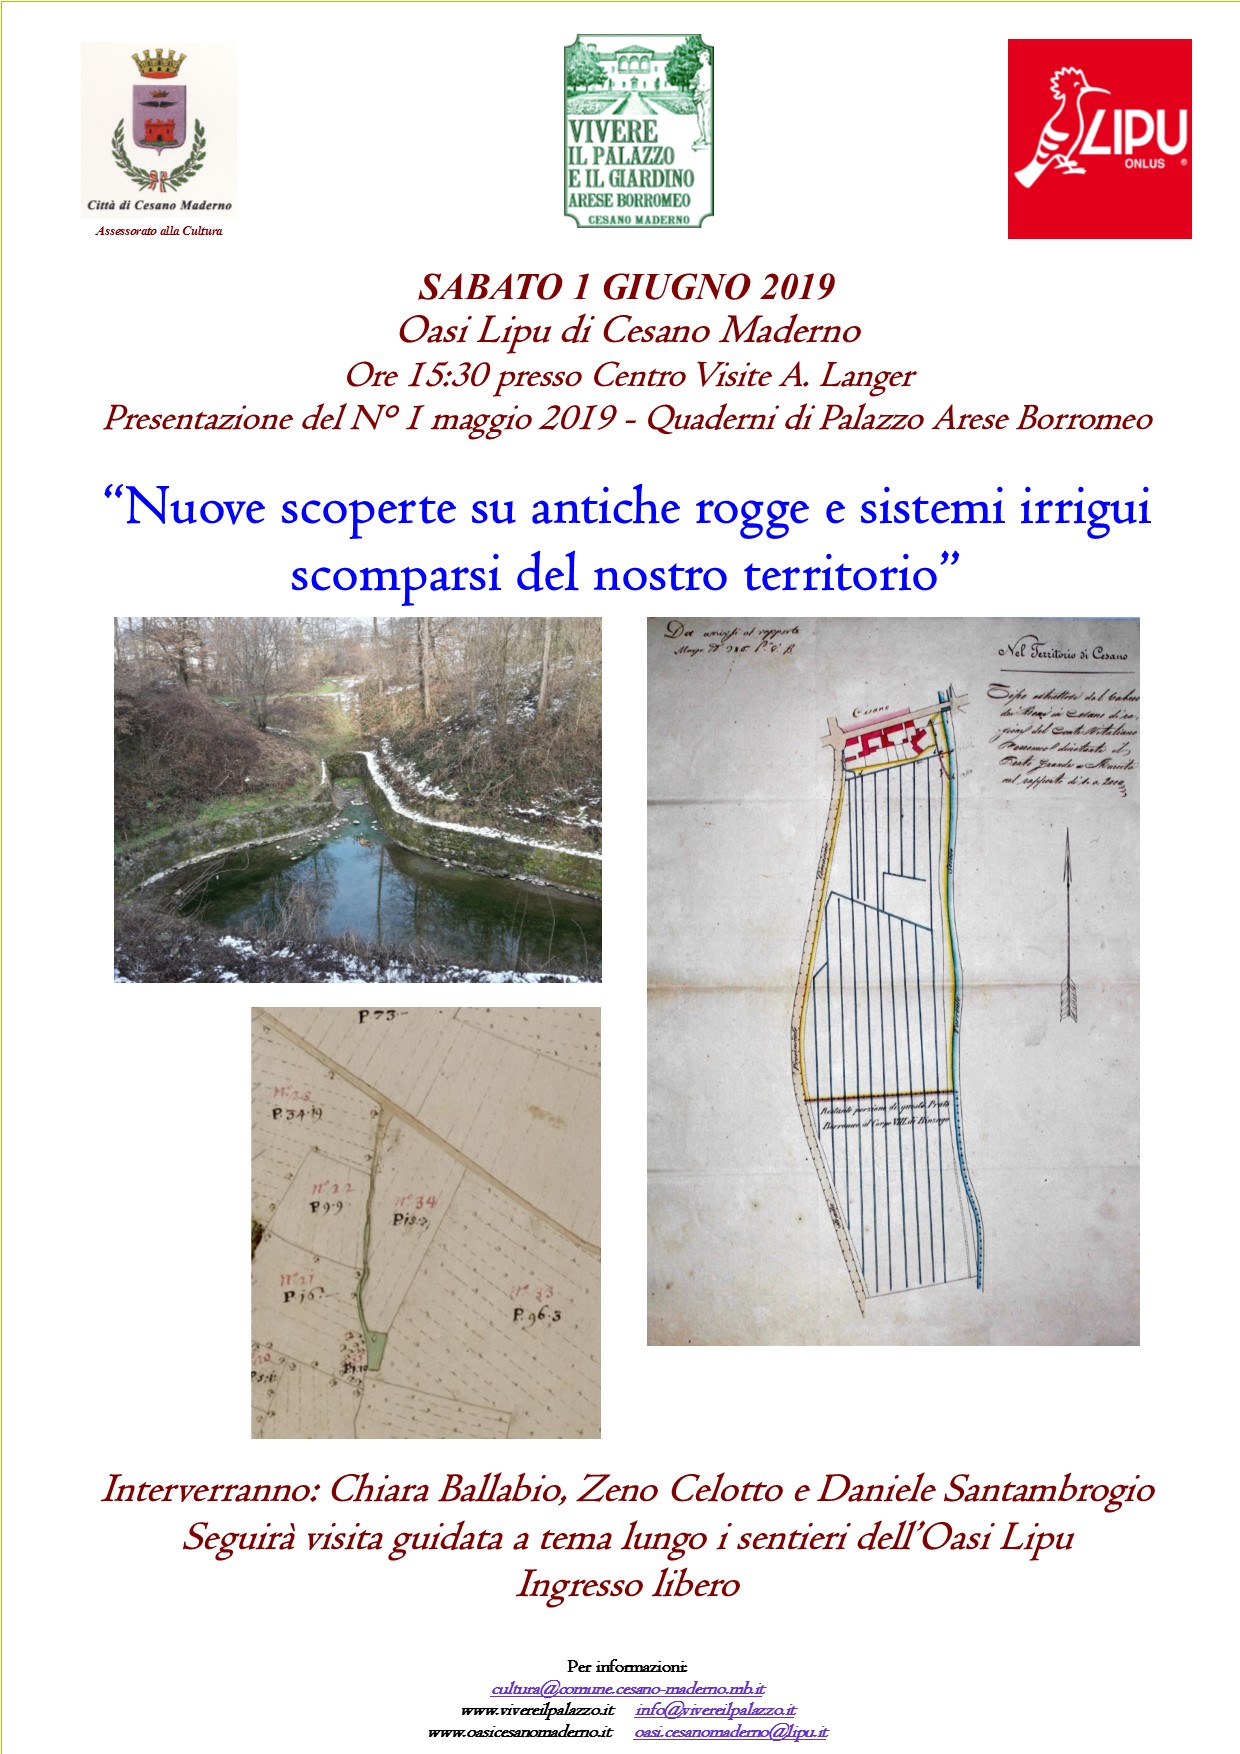 Presentazione del nuovo Quaderno di Palazzo Arese Borromeo (edizione maggio 2019)